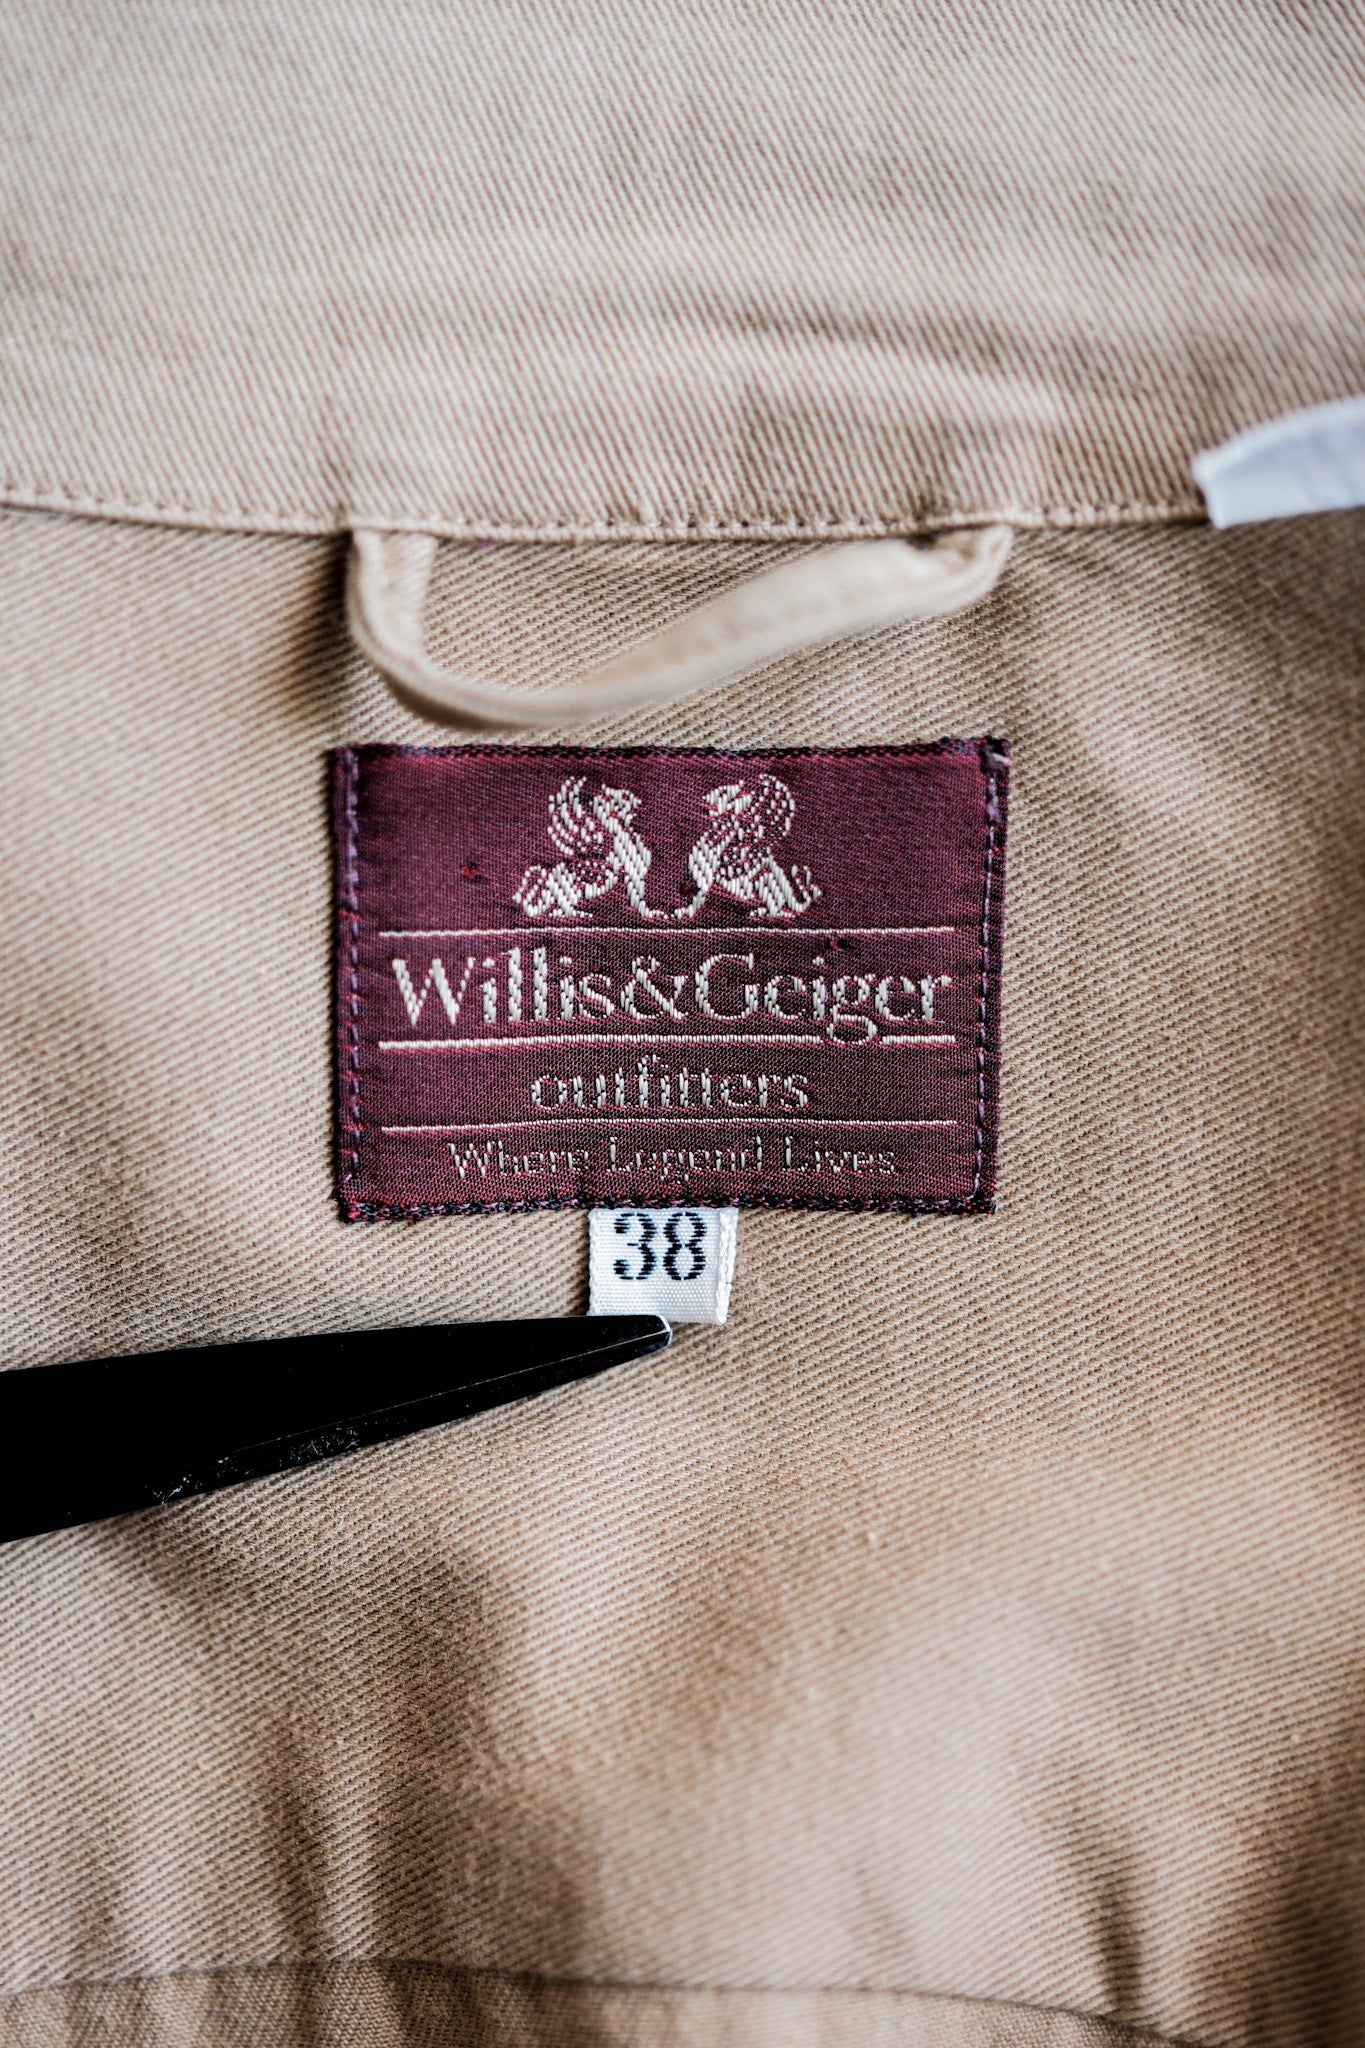 【~80's】Willis&Geiger Australian Bush Jacket Size.38 "Made in U.S.A."